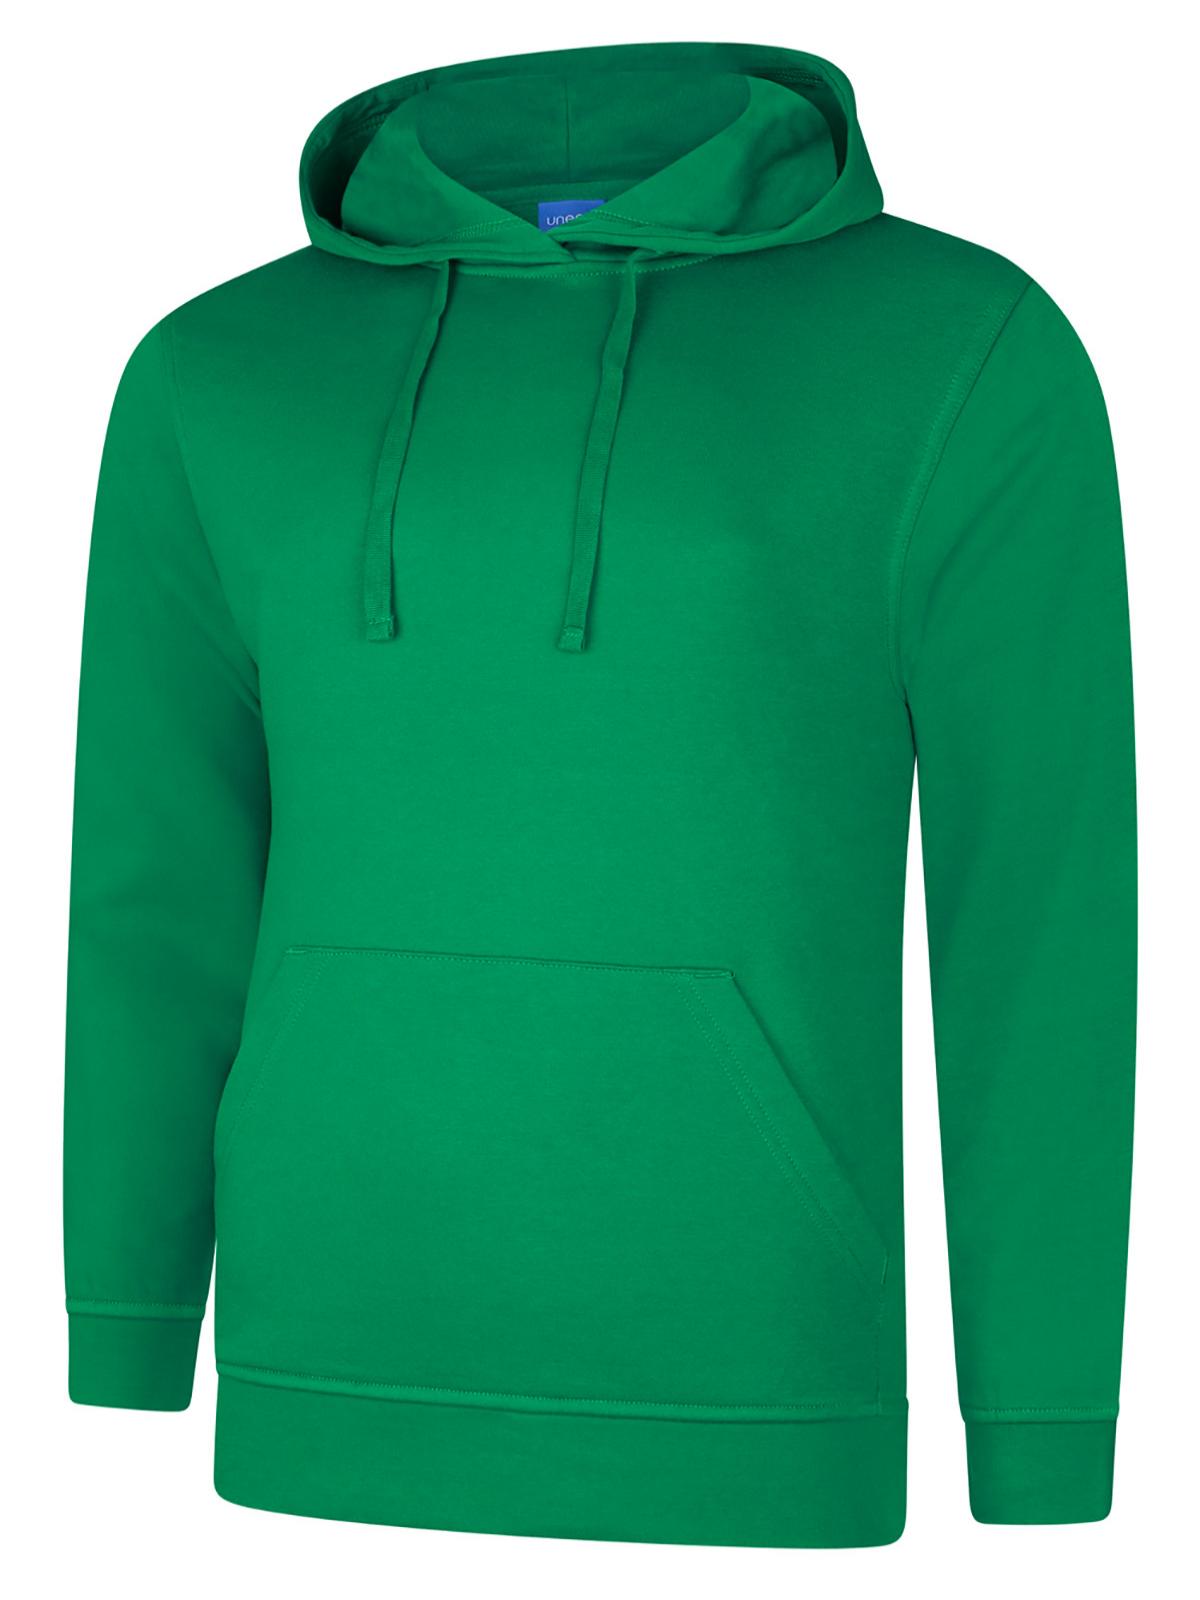 Uneek Deluxe Hooded Sweatshirt UC509 - Kelly Green